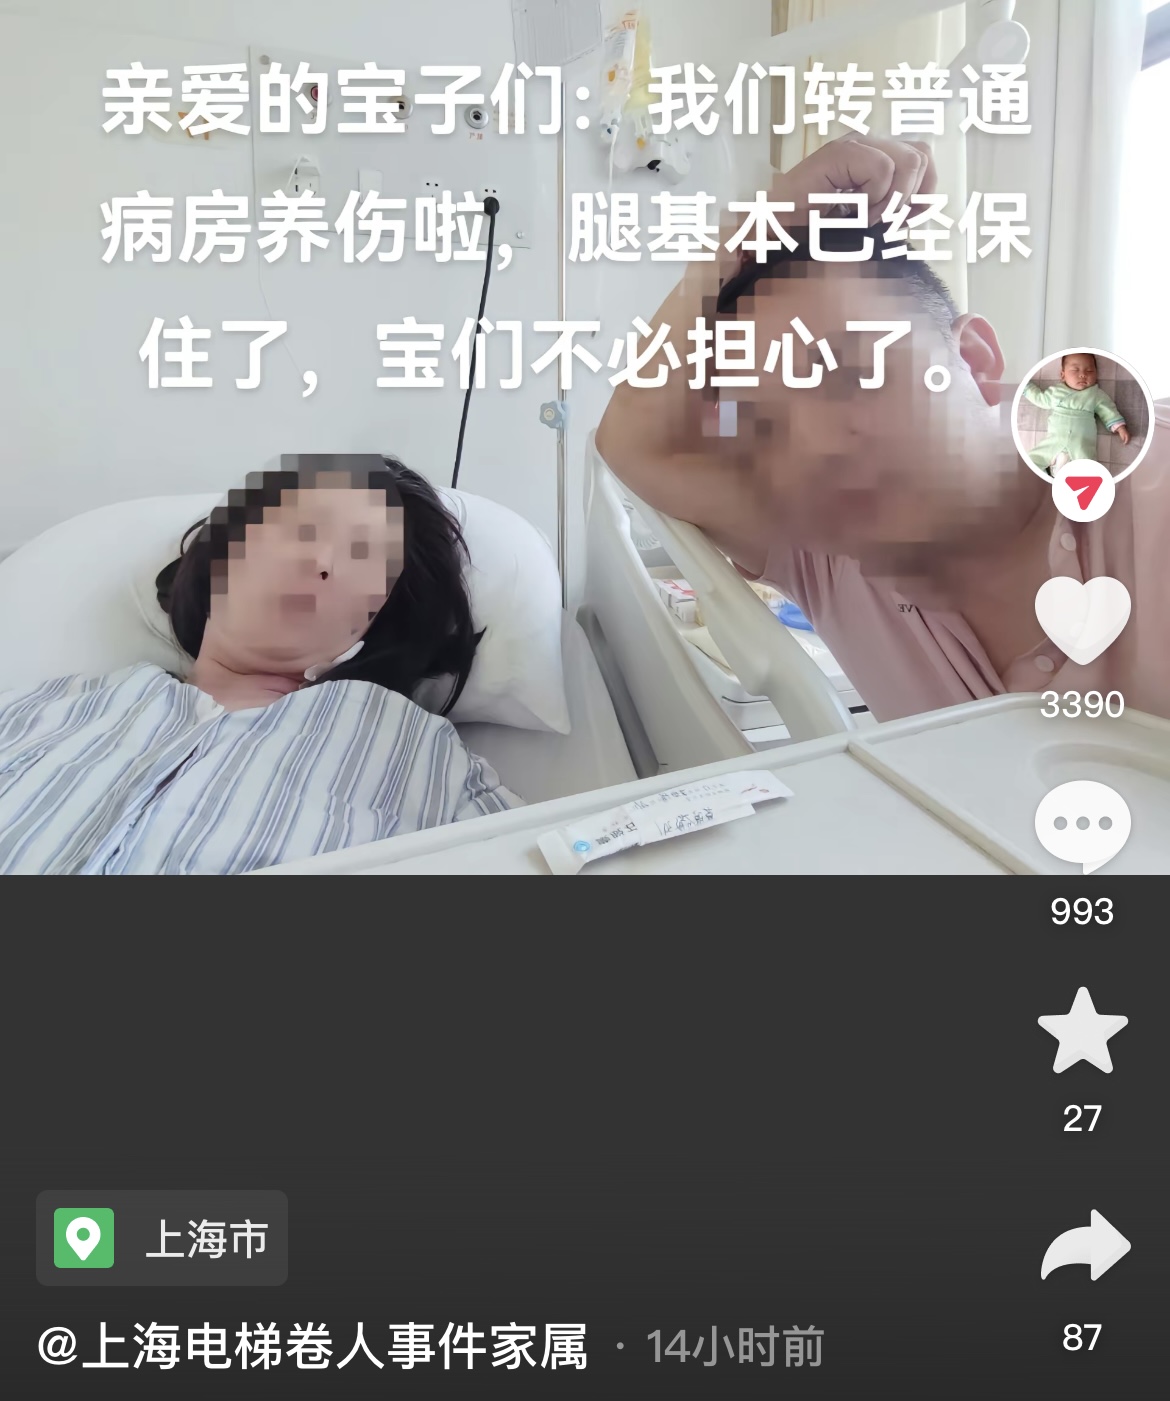 4月26日晚，受伤女子的丈夫在社交平台发布图文。 截图